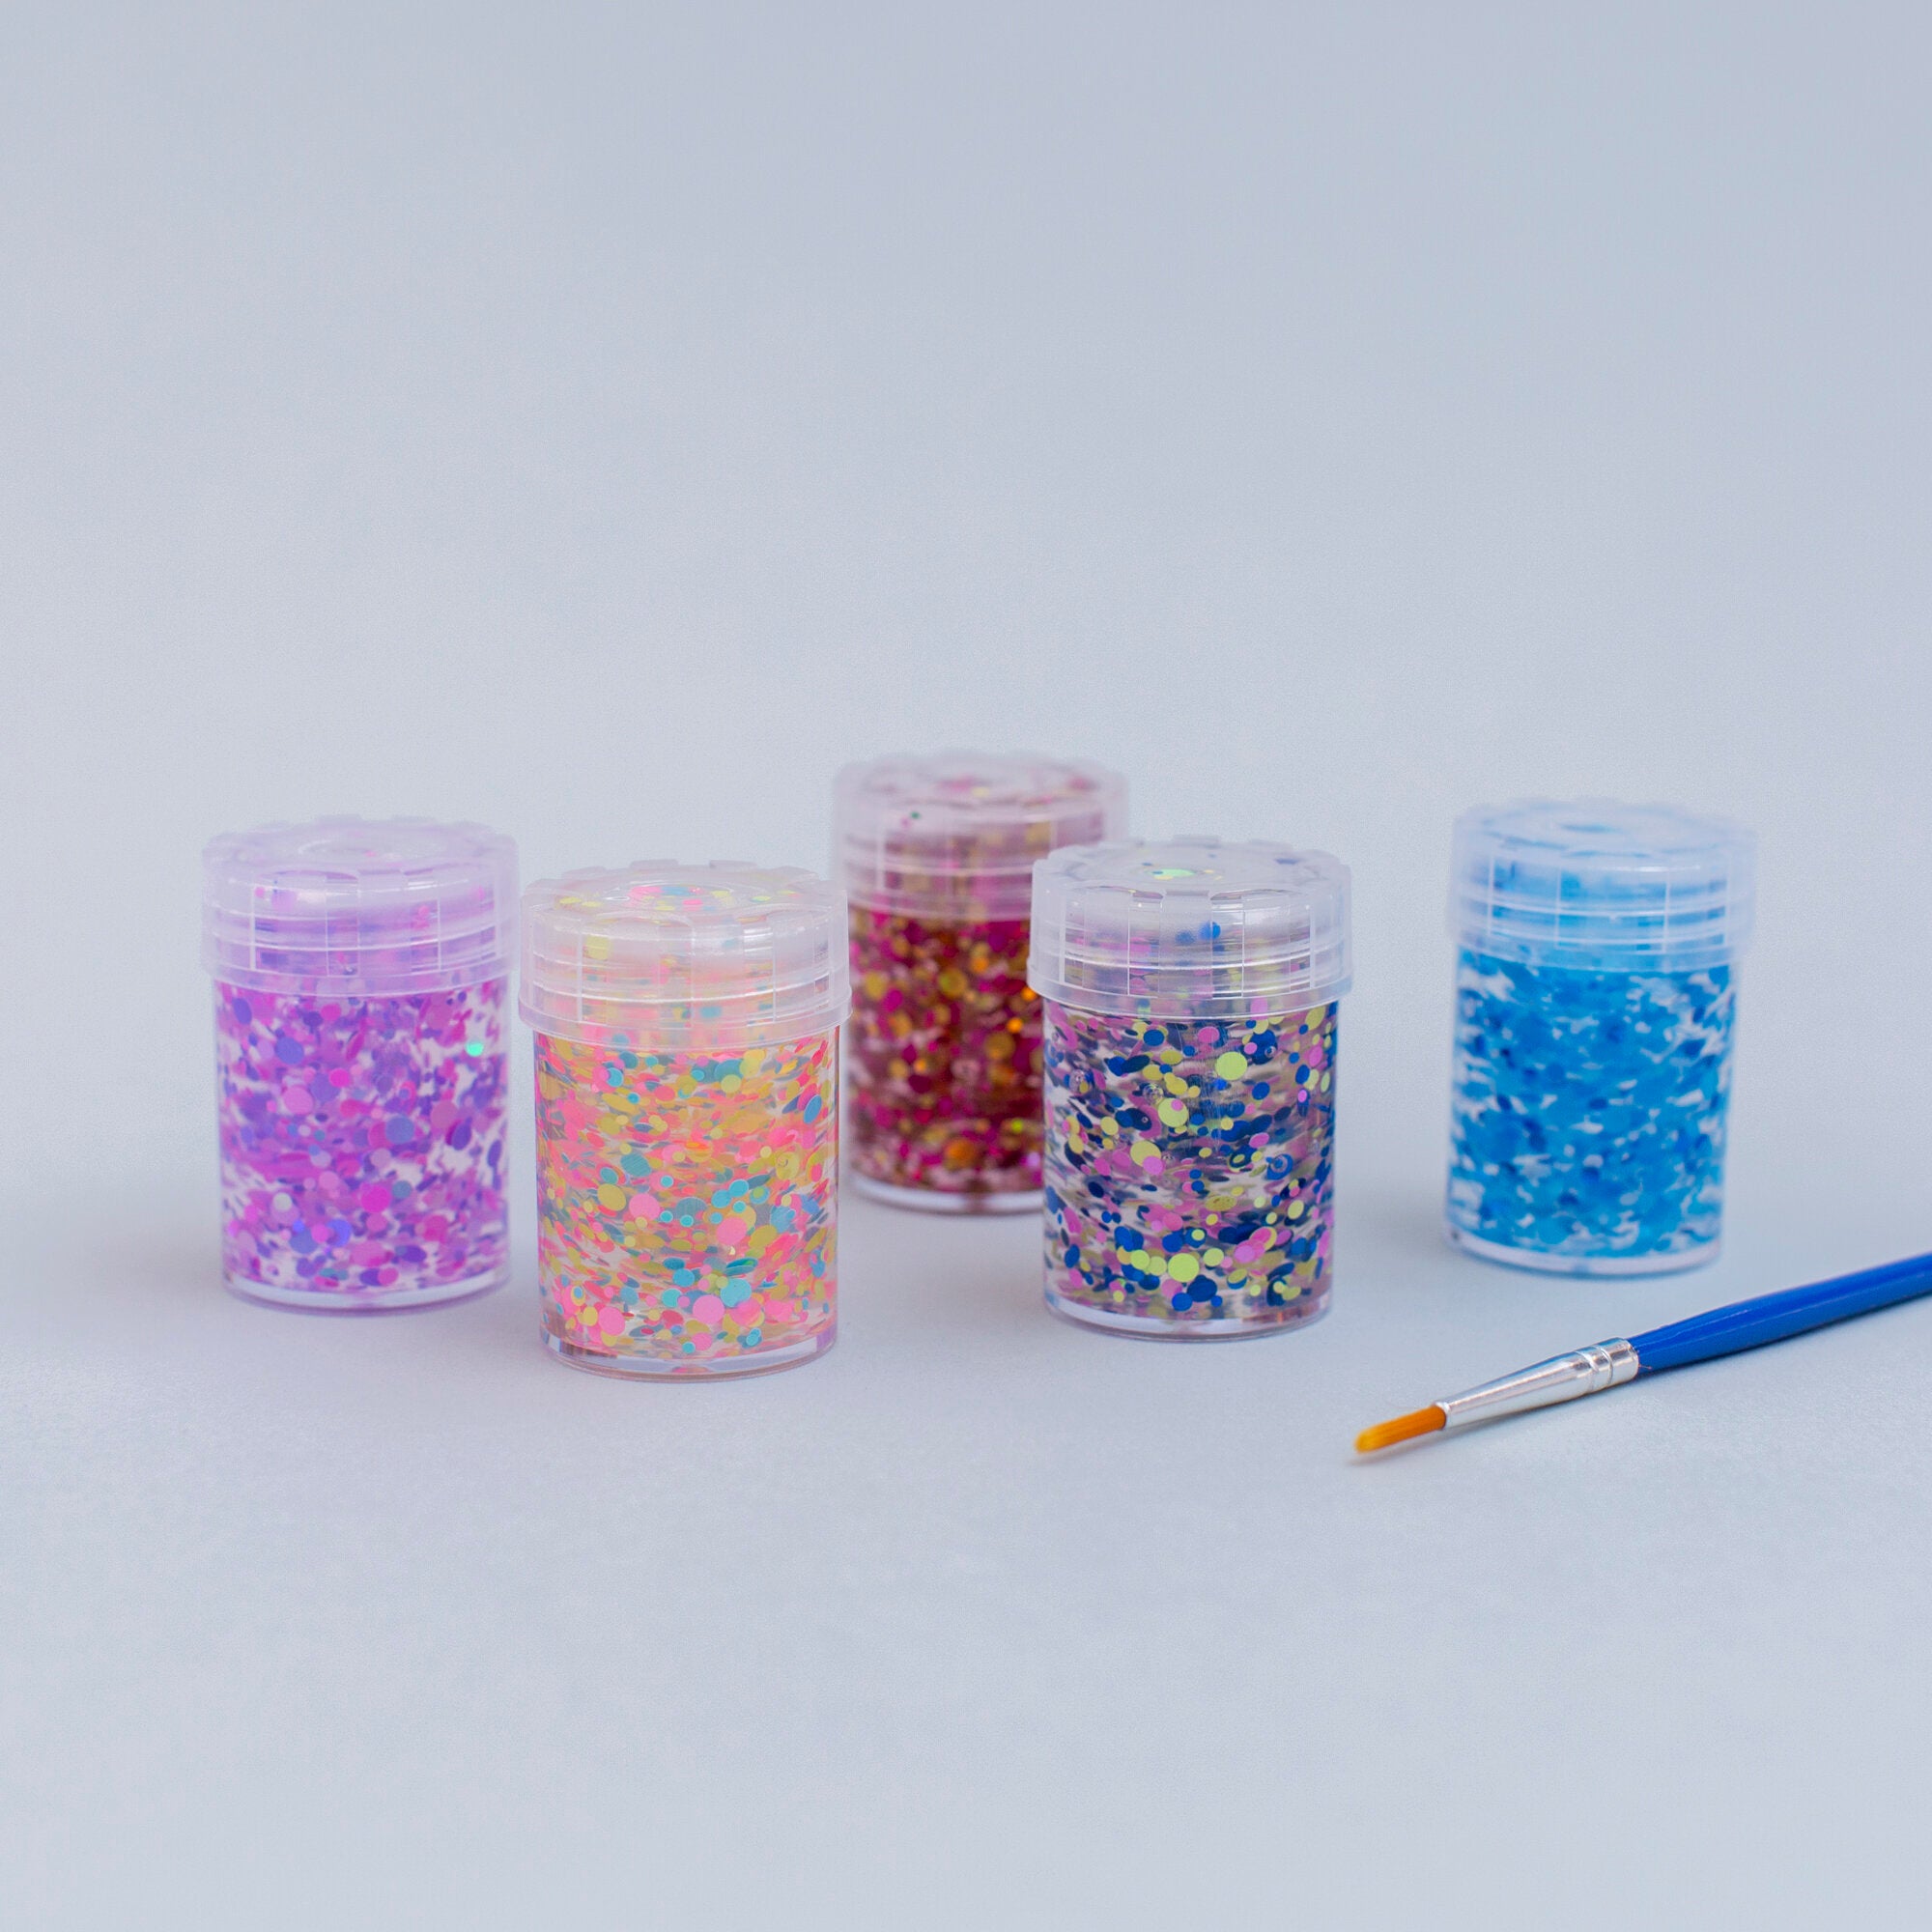 Mini Dots Pixie Paste Glitter Glue - Set of 5